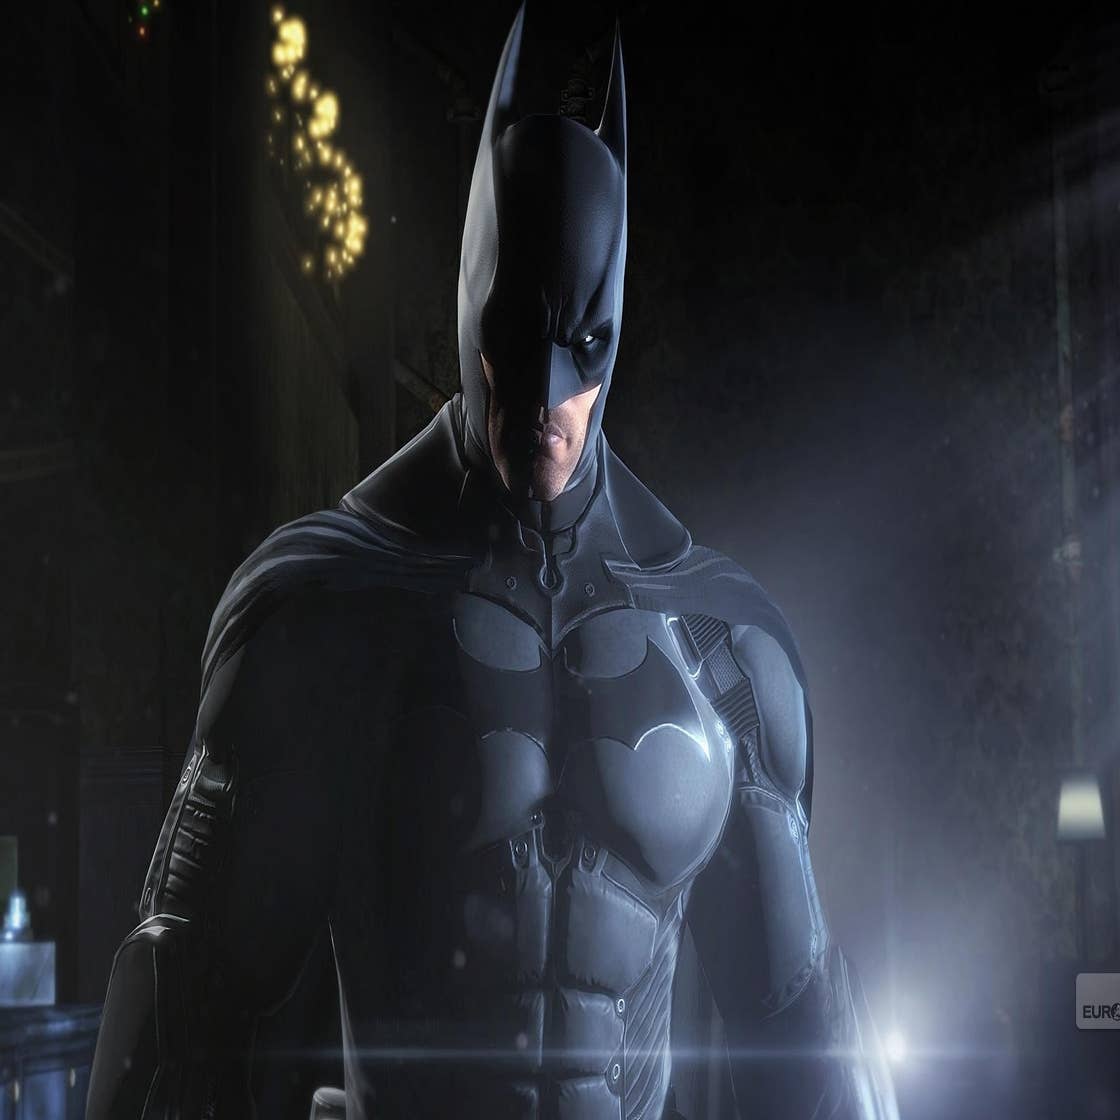 Kevin Conroy não será a voz do próximo jogo de Batman